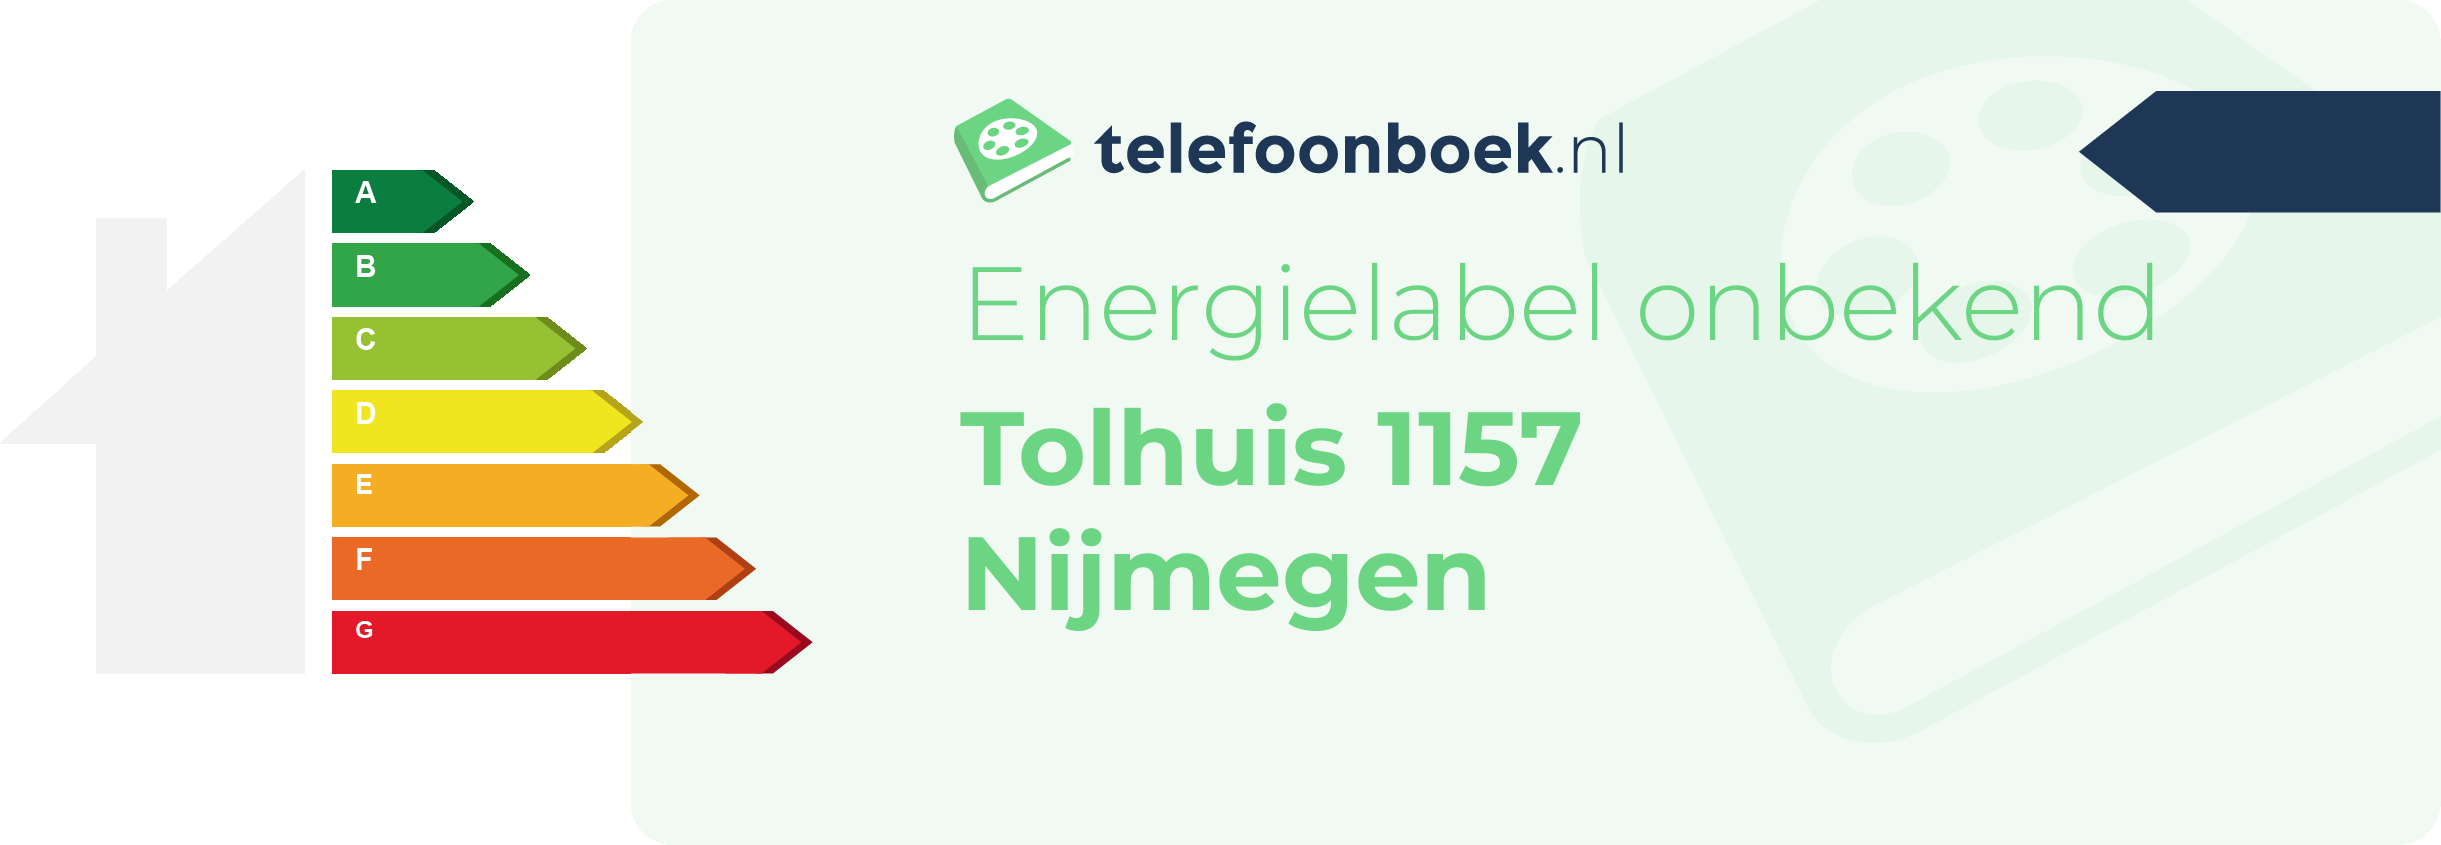 Energielabel Tolhuis 1157 Nijmegen